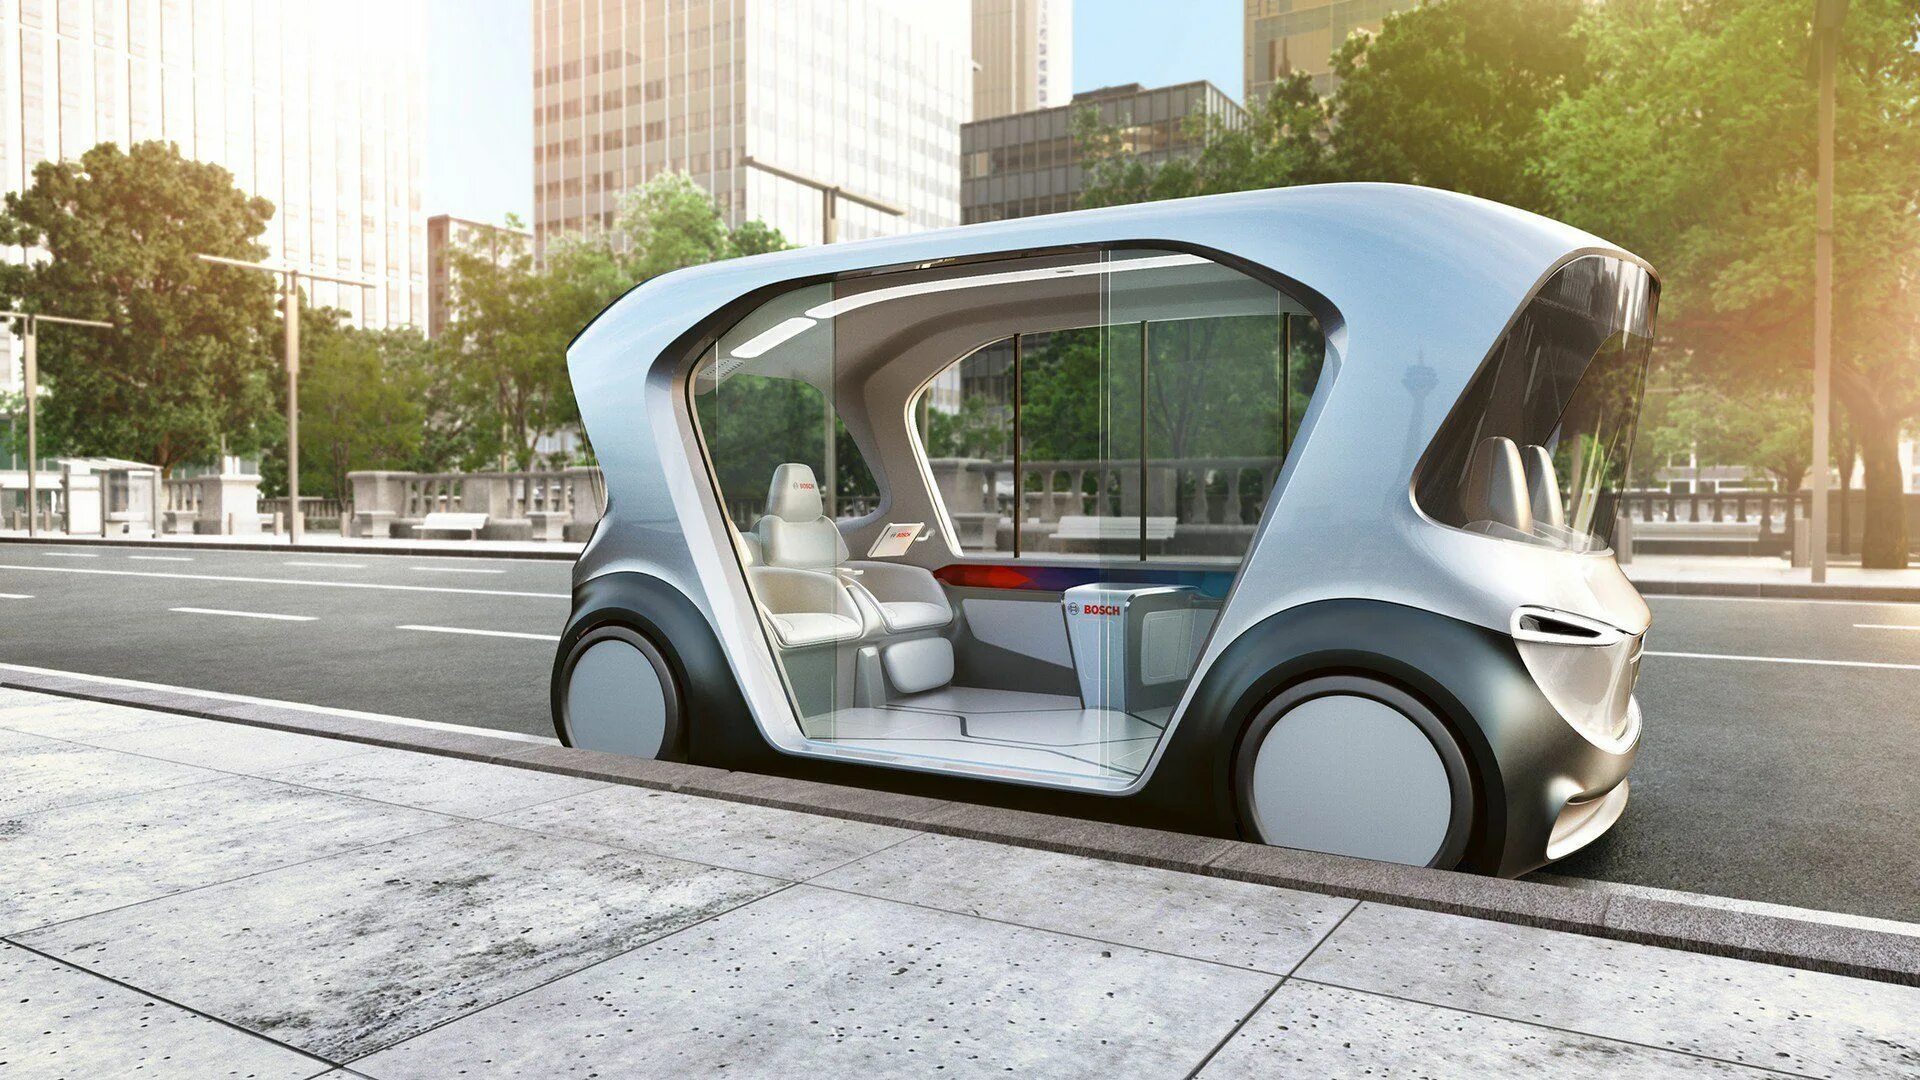 Средство будущее. Беспилотный автомобиль концепт. Городской автомобиль будущего. Электрические автомобили с автопилотом. Дизайн транспорта будущего.